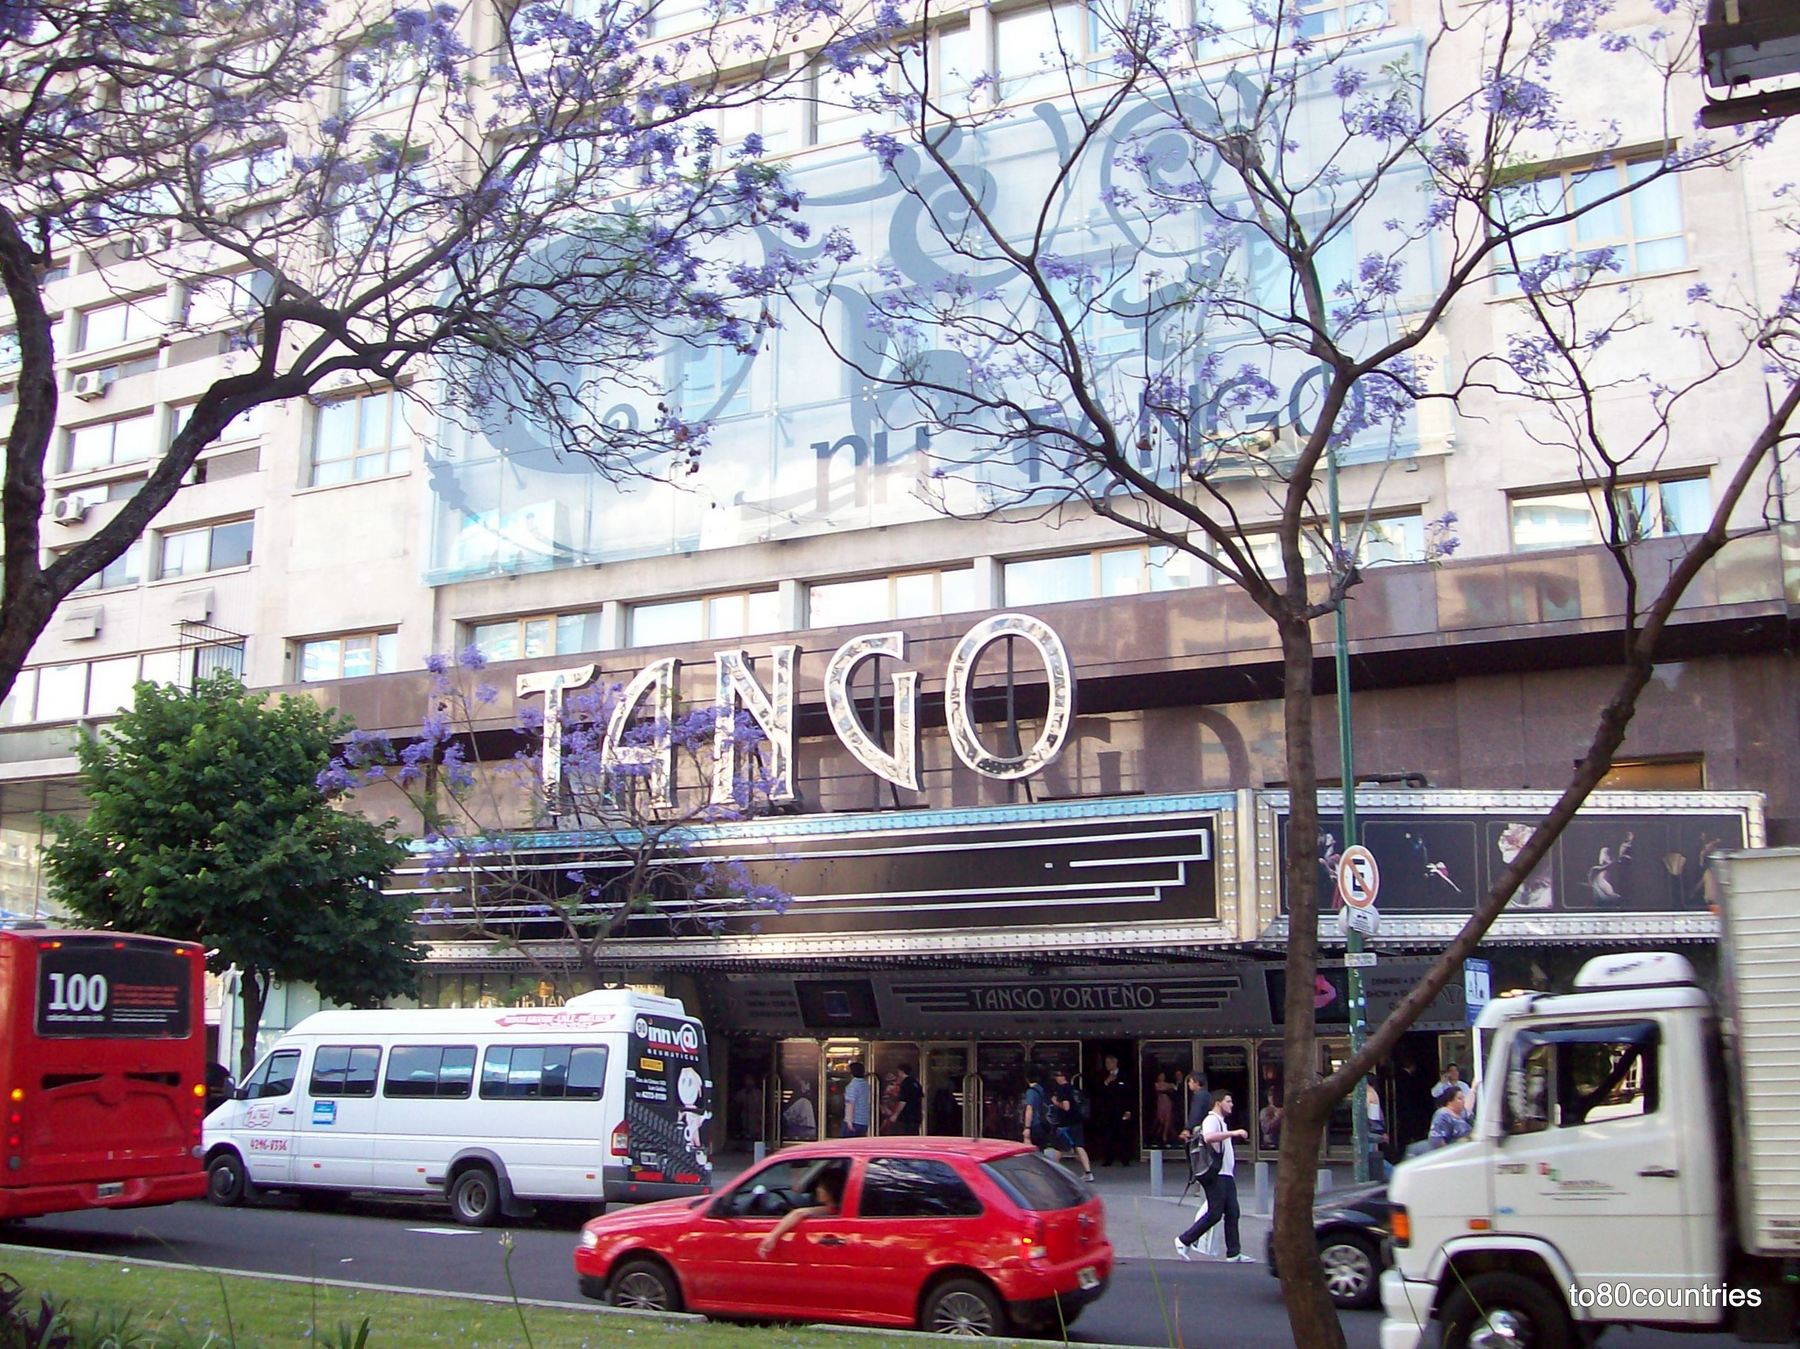 Tango Porteno - Buenos Aires